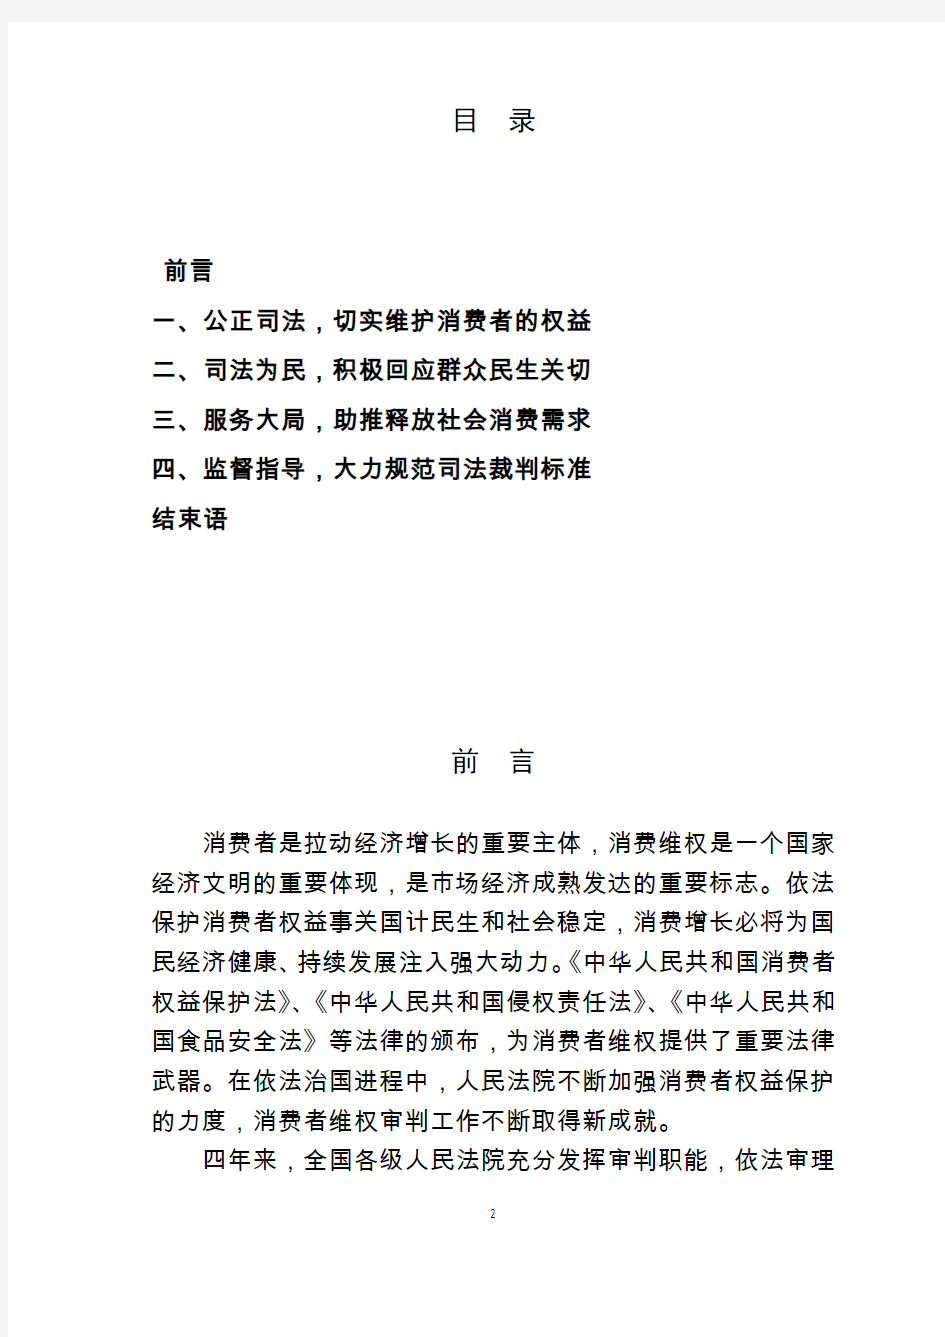 中国消费者权益保护民事审判白皮书-中华人民共和国最高人民法院